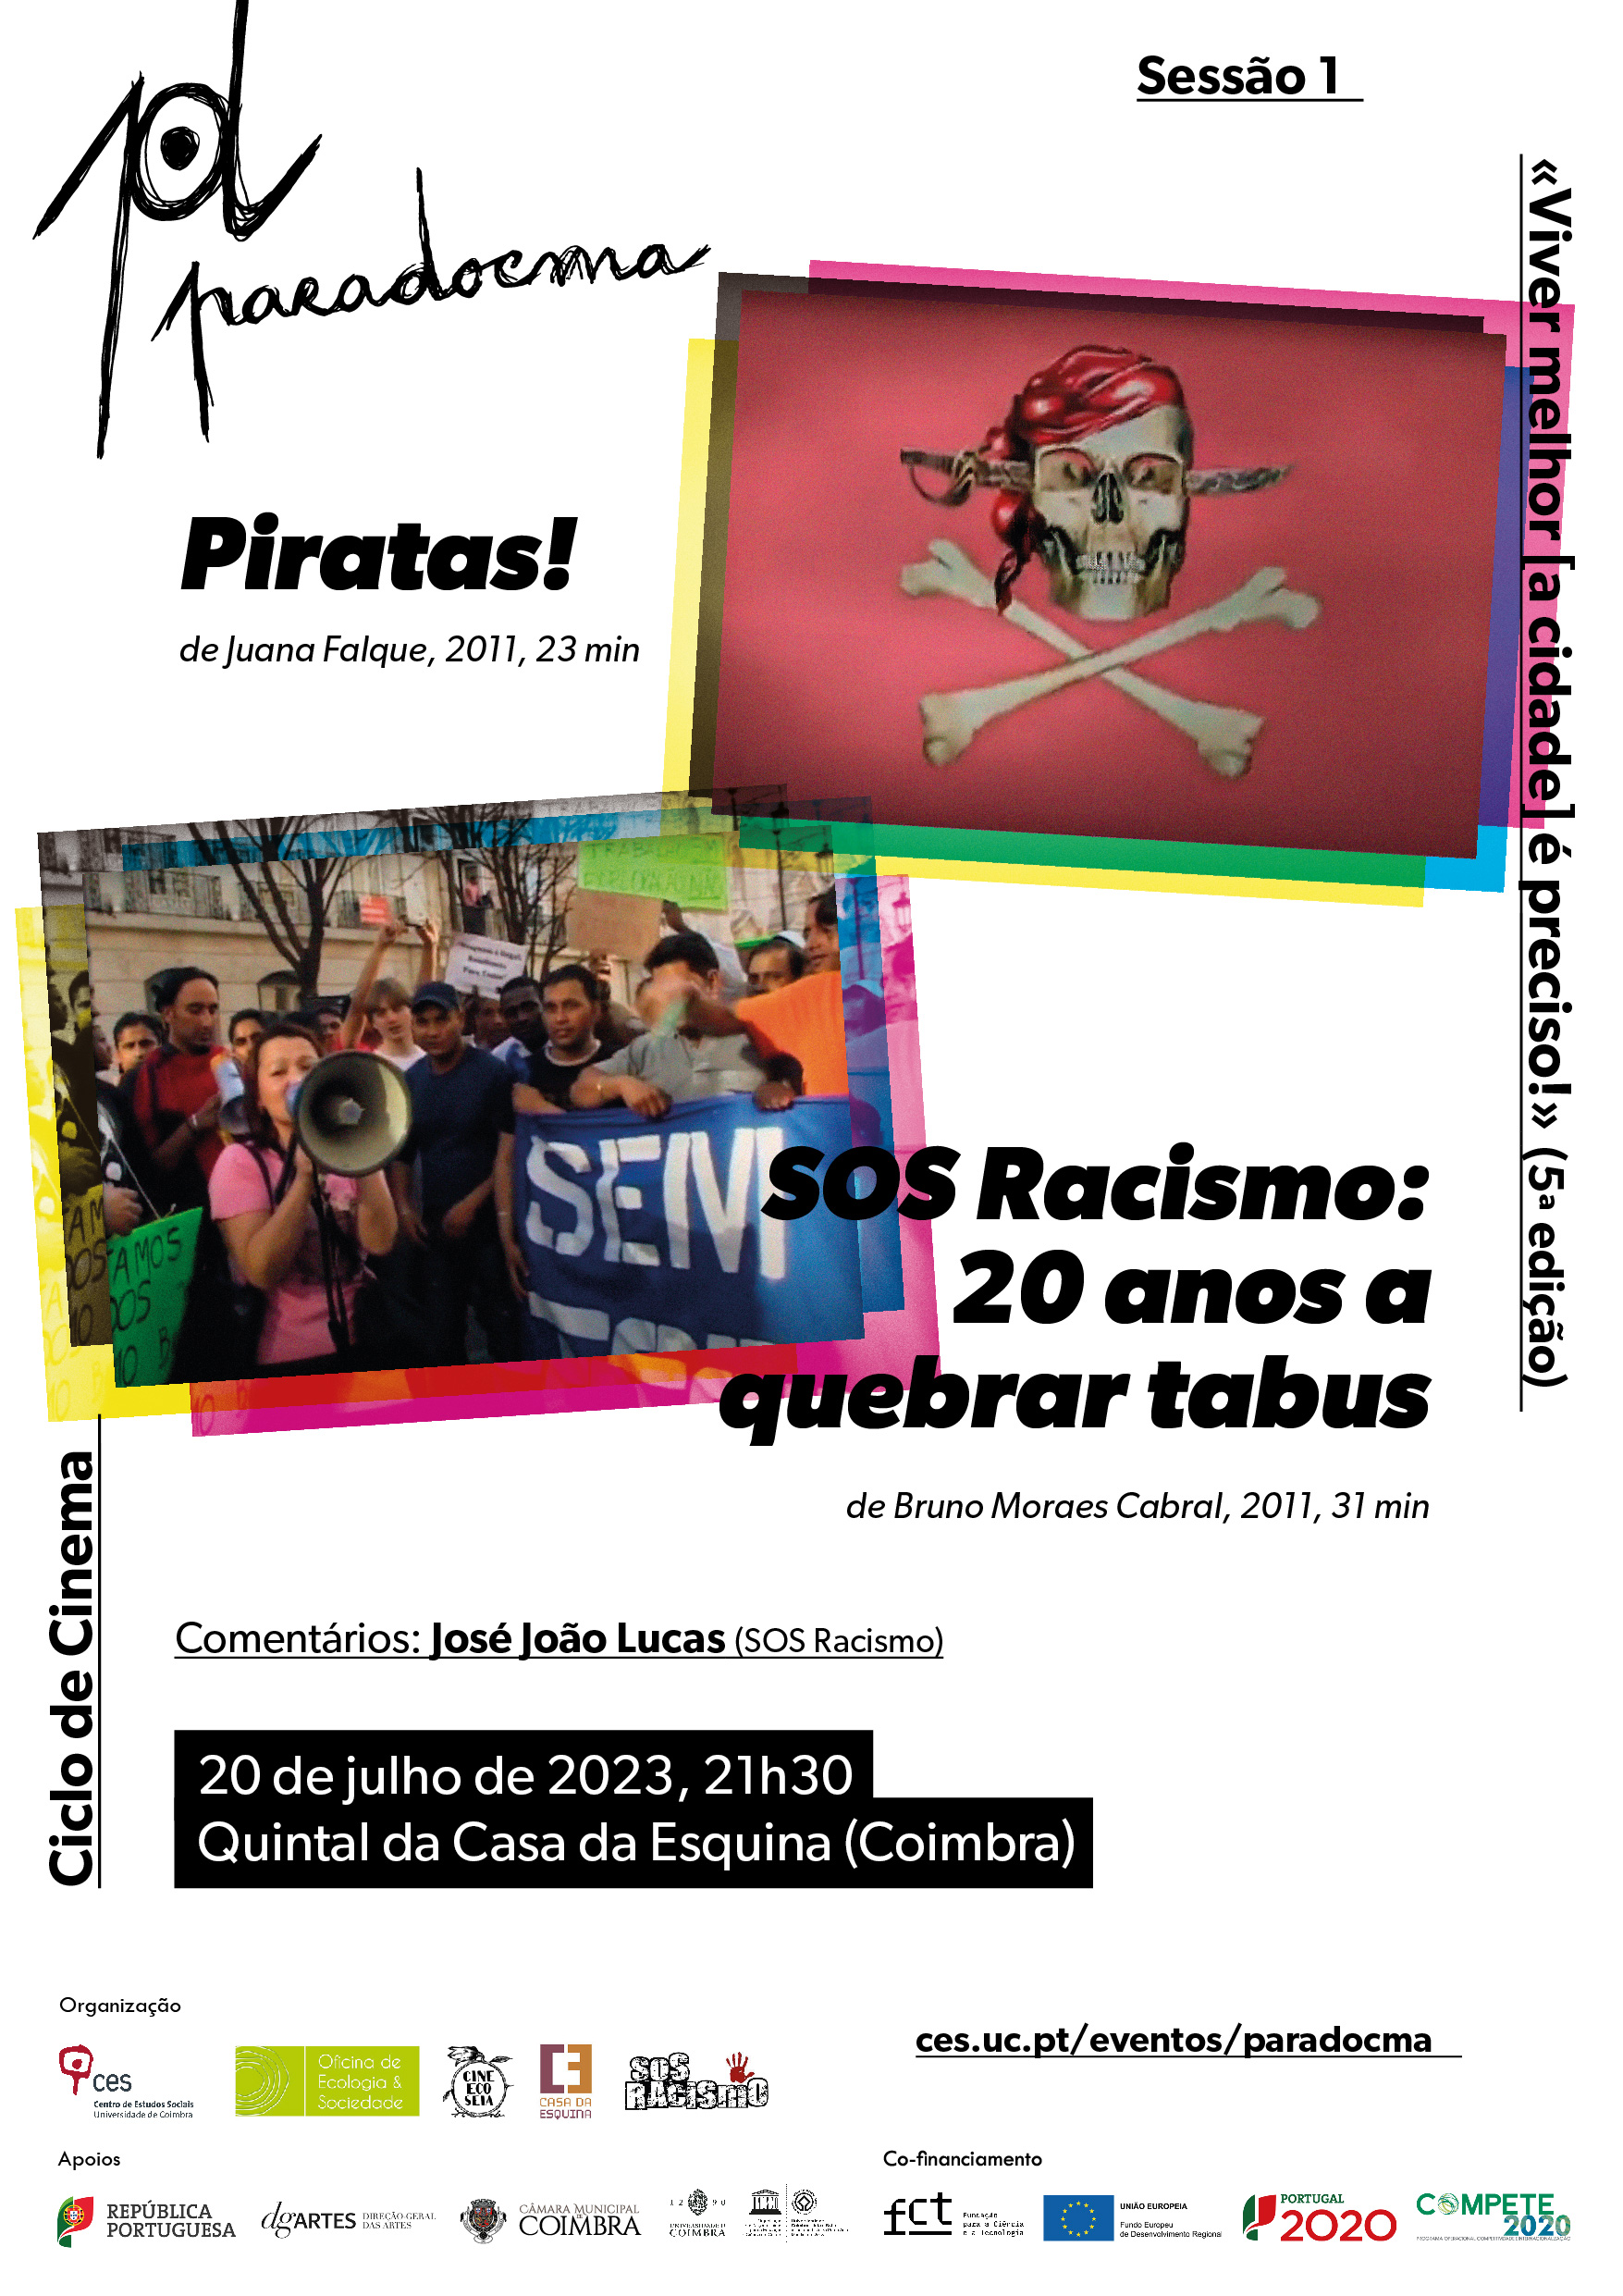 ParaDocma | Session 1: «Piratas!» by Juana Falque and «SOS Racismo: 20 anos a quebrar tabus» by Bruno Moraes Cabral<span id="edit_43488"><script>$(function() { $('#edit_43488').load( "/myces/user/editobj.php?tipo=evento&id=43488" ); });</script></span>